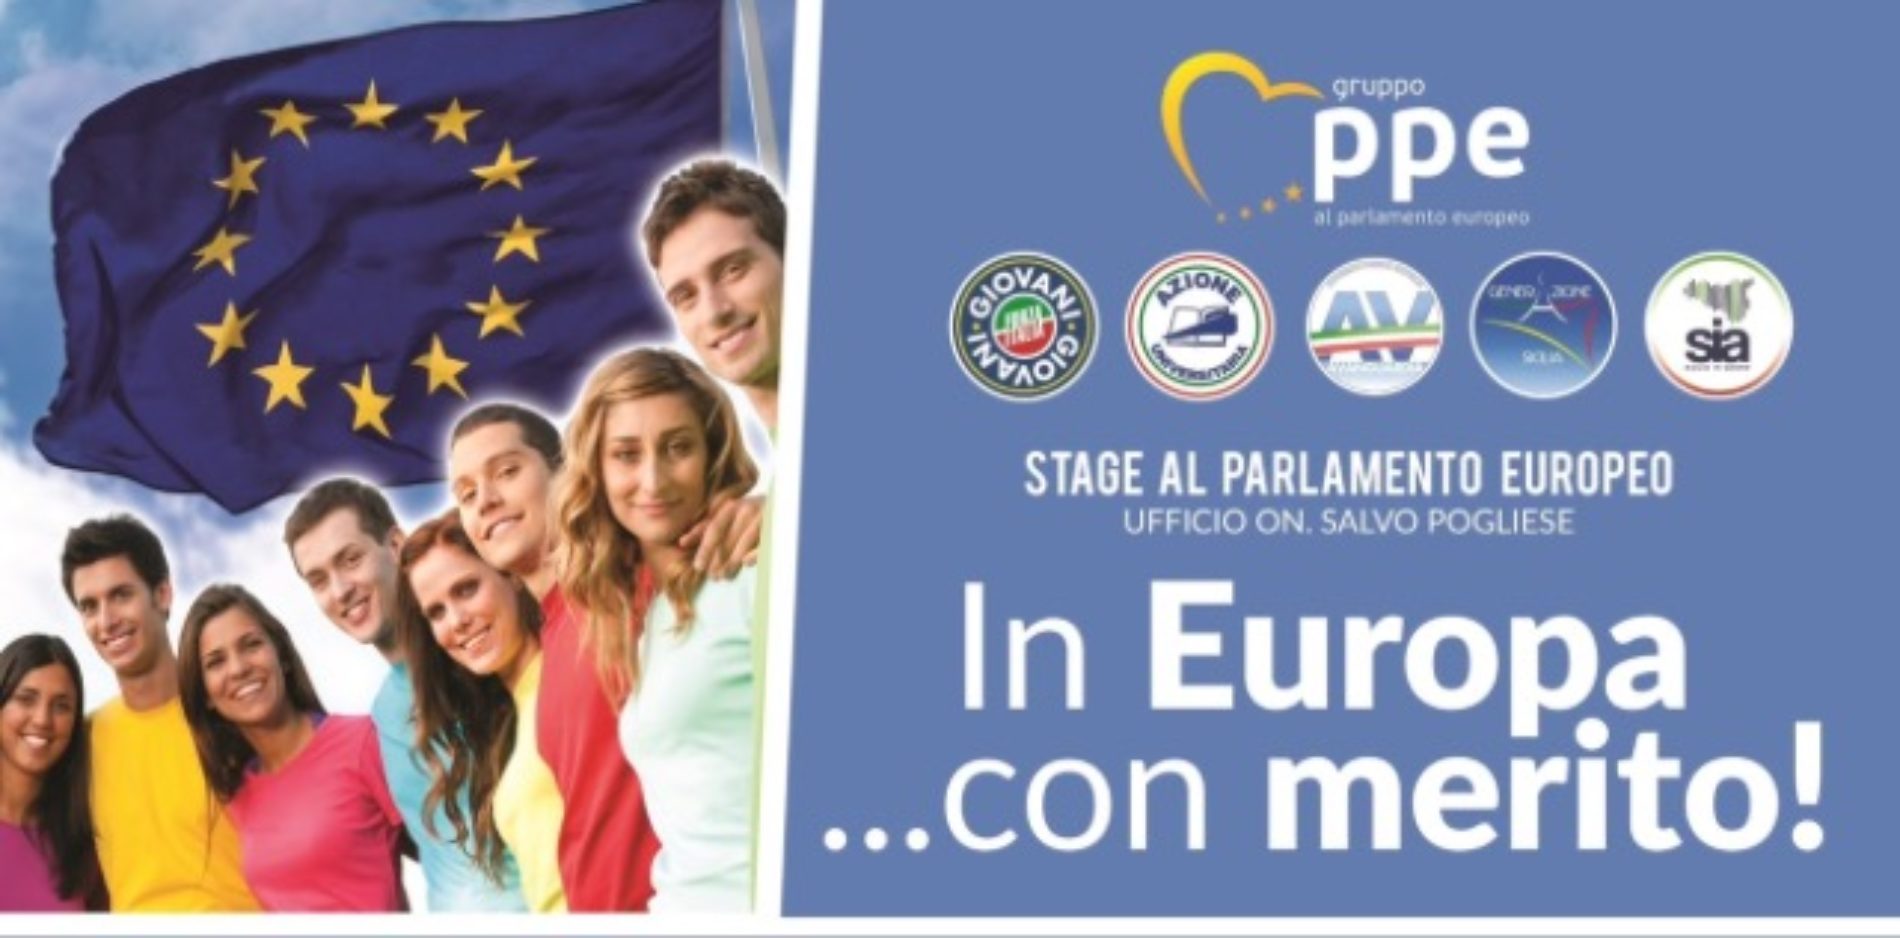 L’europarlamentare Salvo Pogliese a Barrafranca per parlare del progetto “In Europa…con merito”